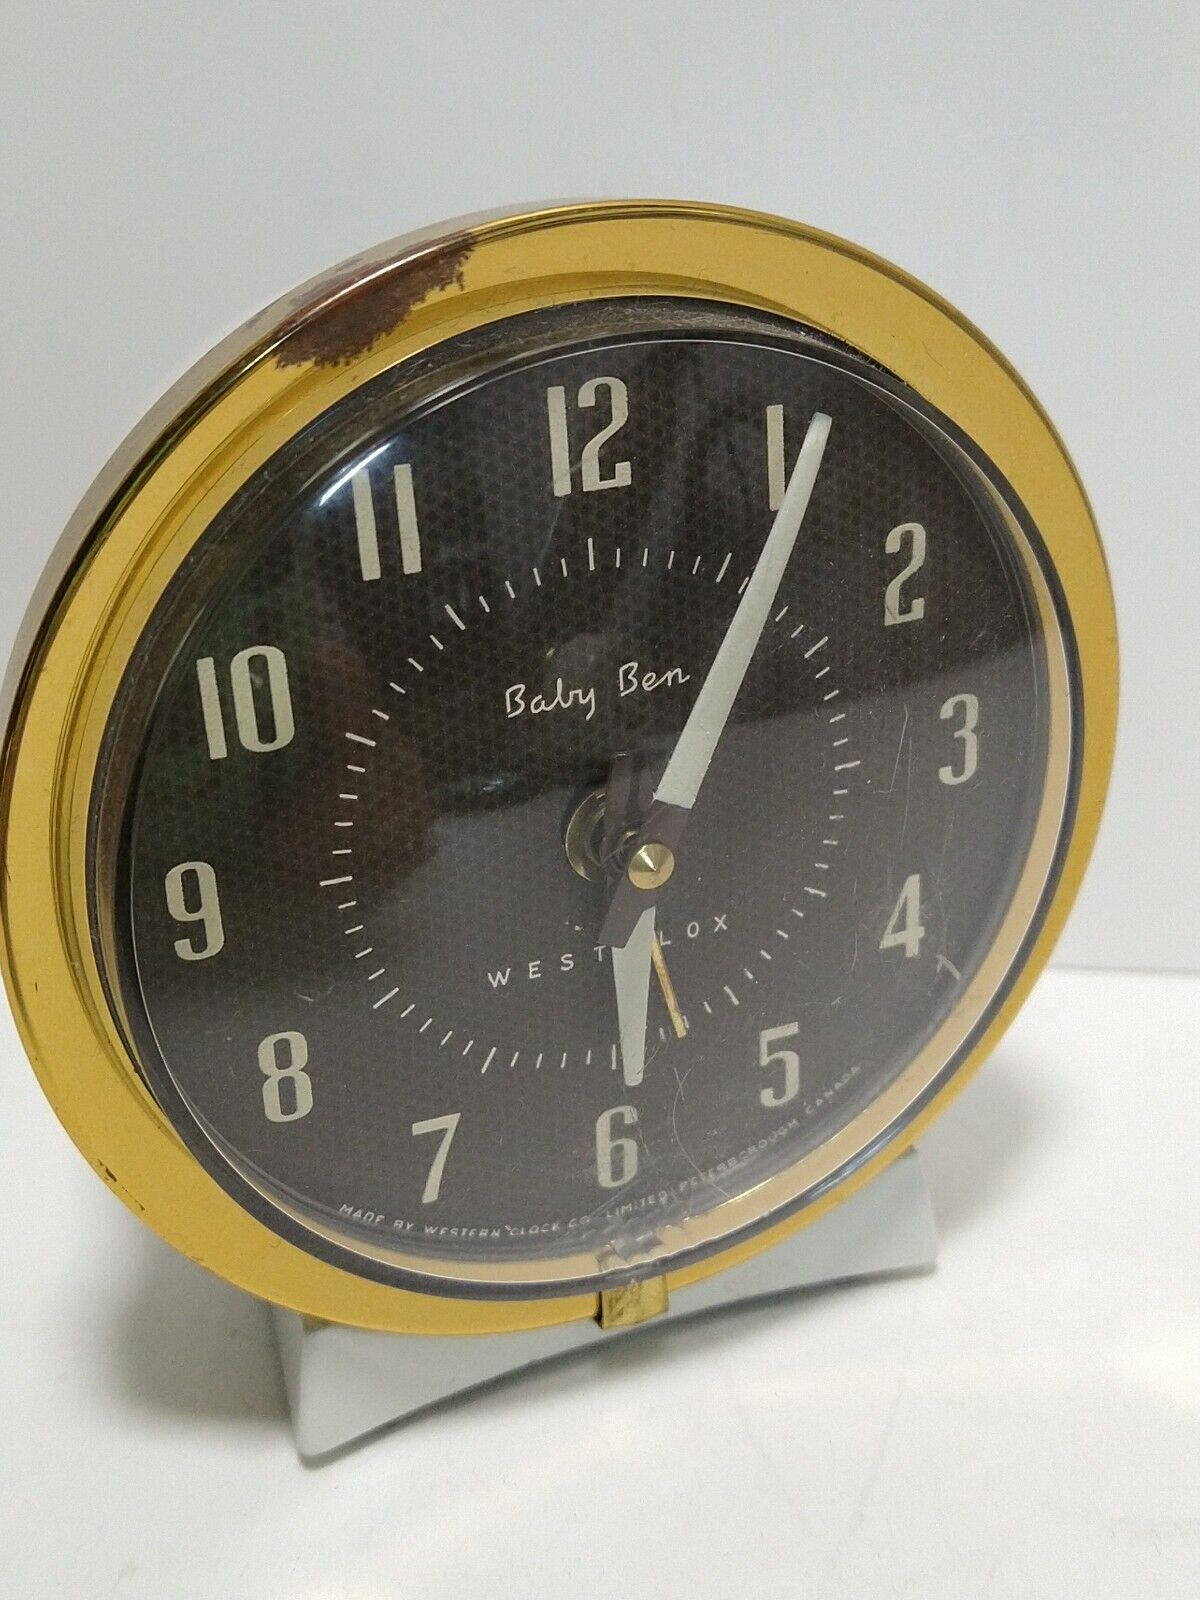 Baby Ben Westclox Alarm Clock 61Y-77 Made In Canada